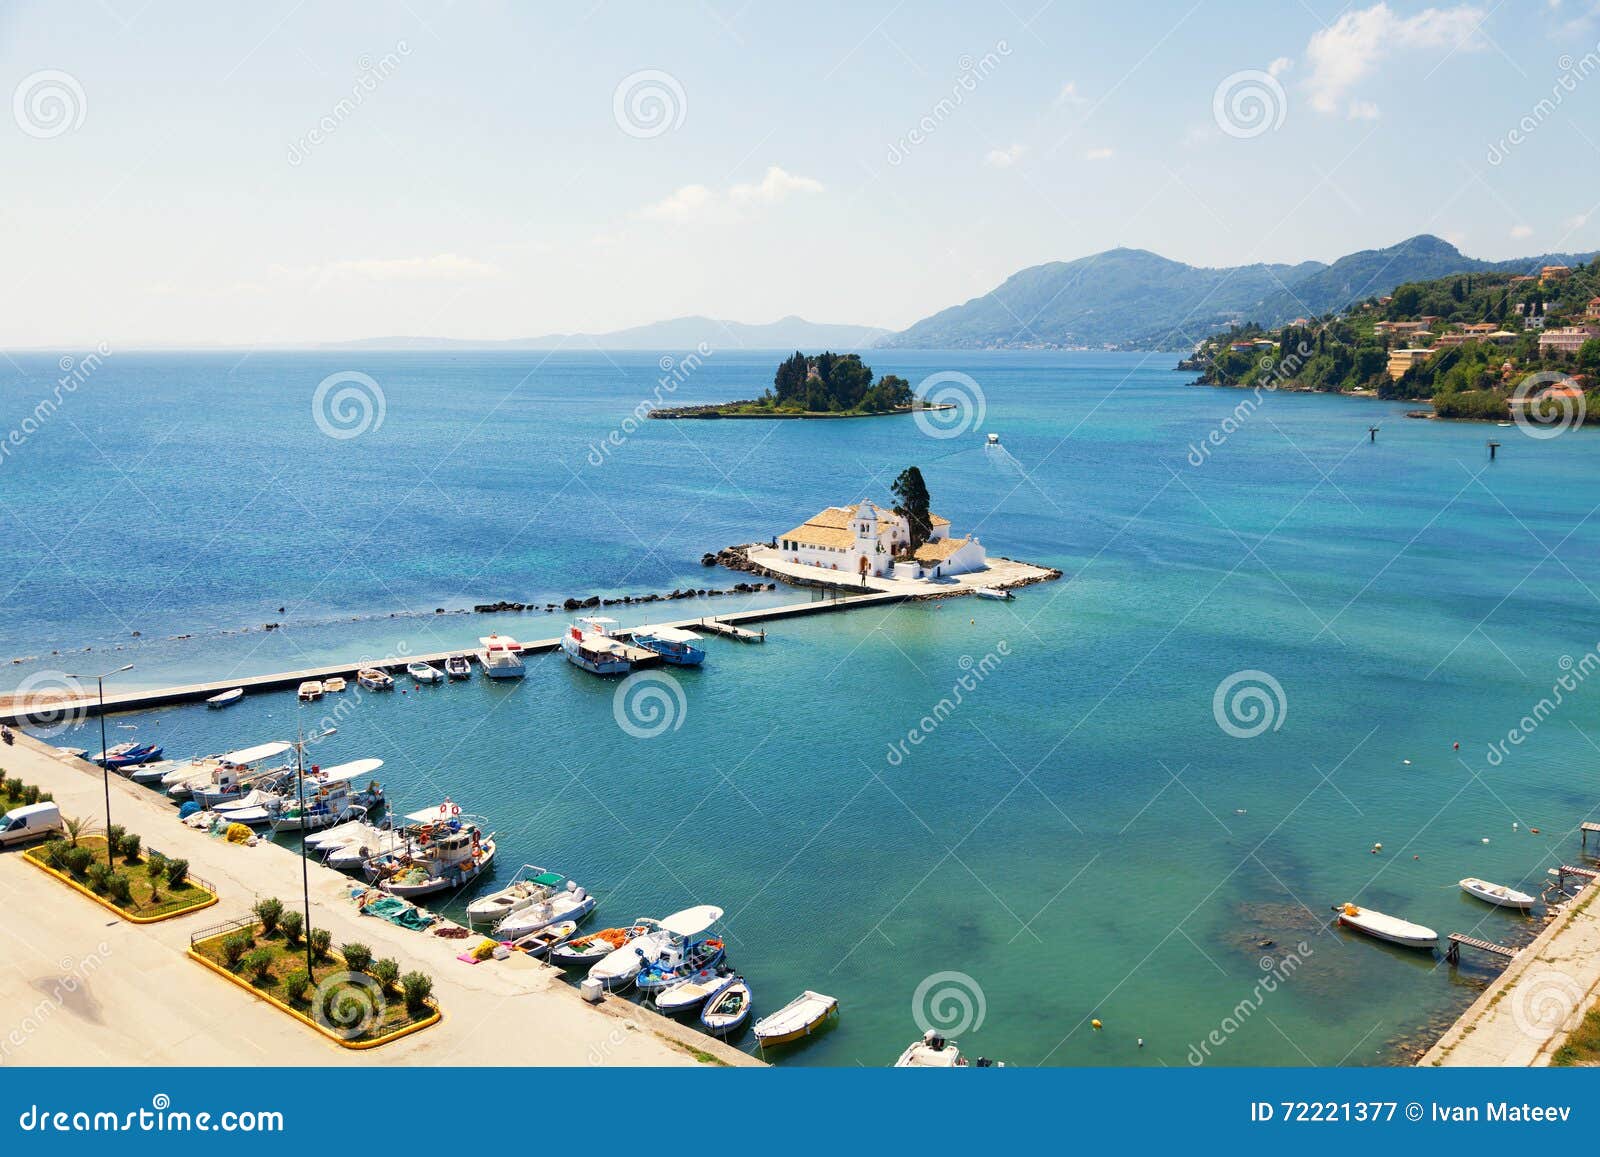 Vlacherna Monastery and Mouse Island on Corfu Stock Image - Image of ...